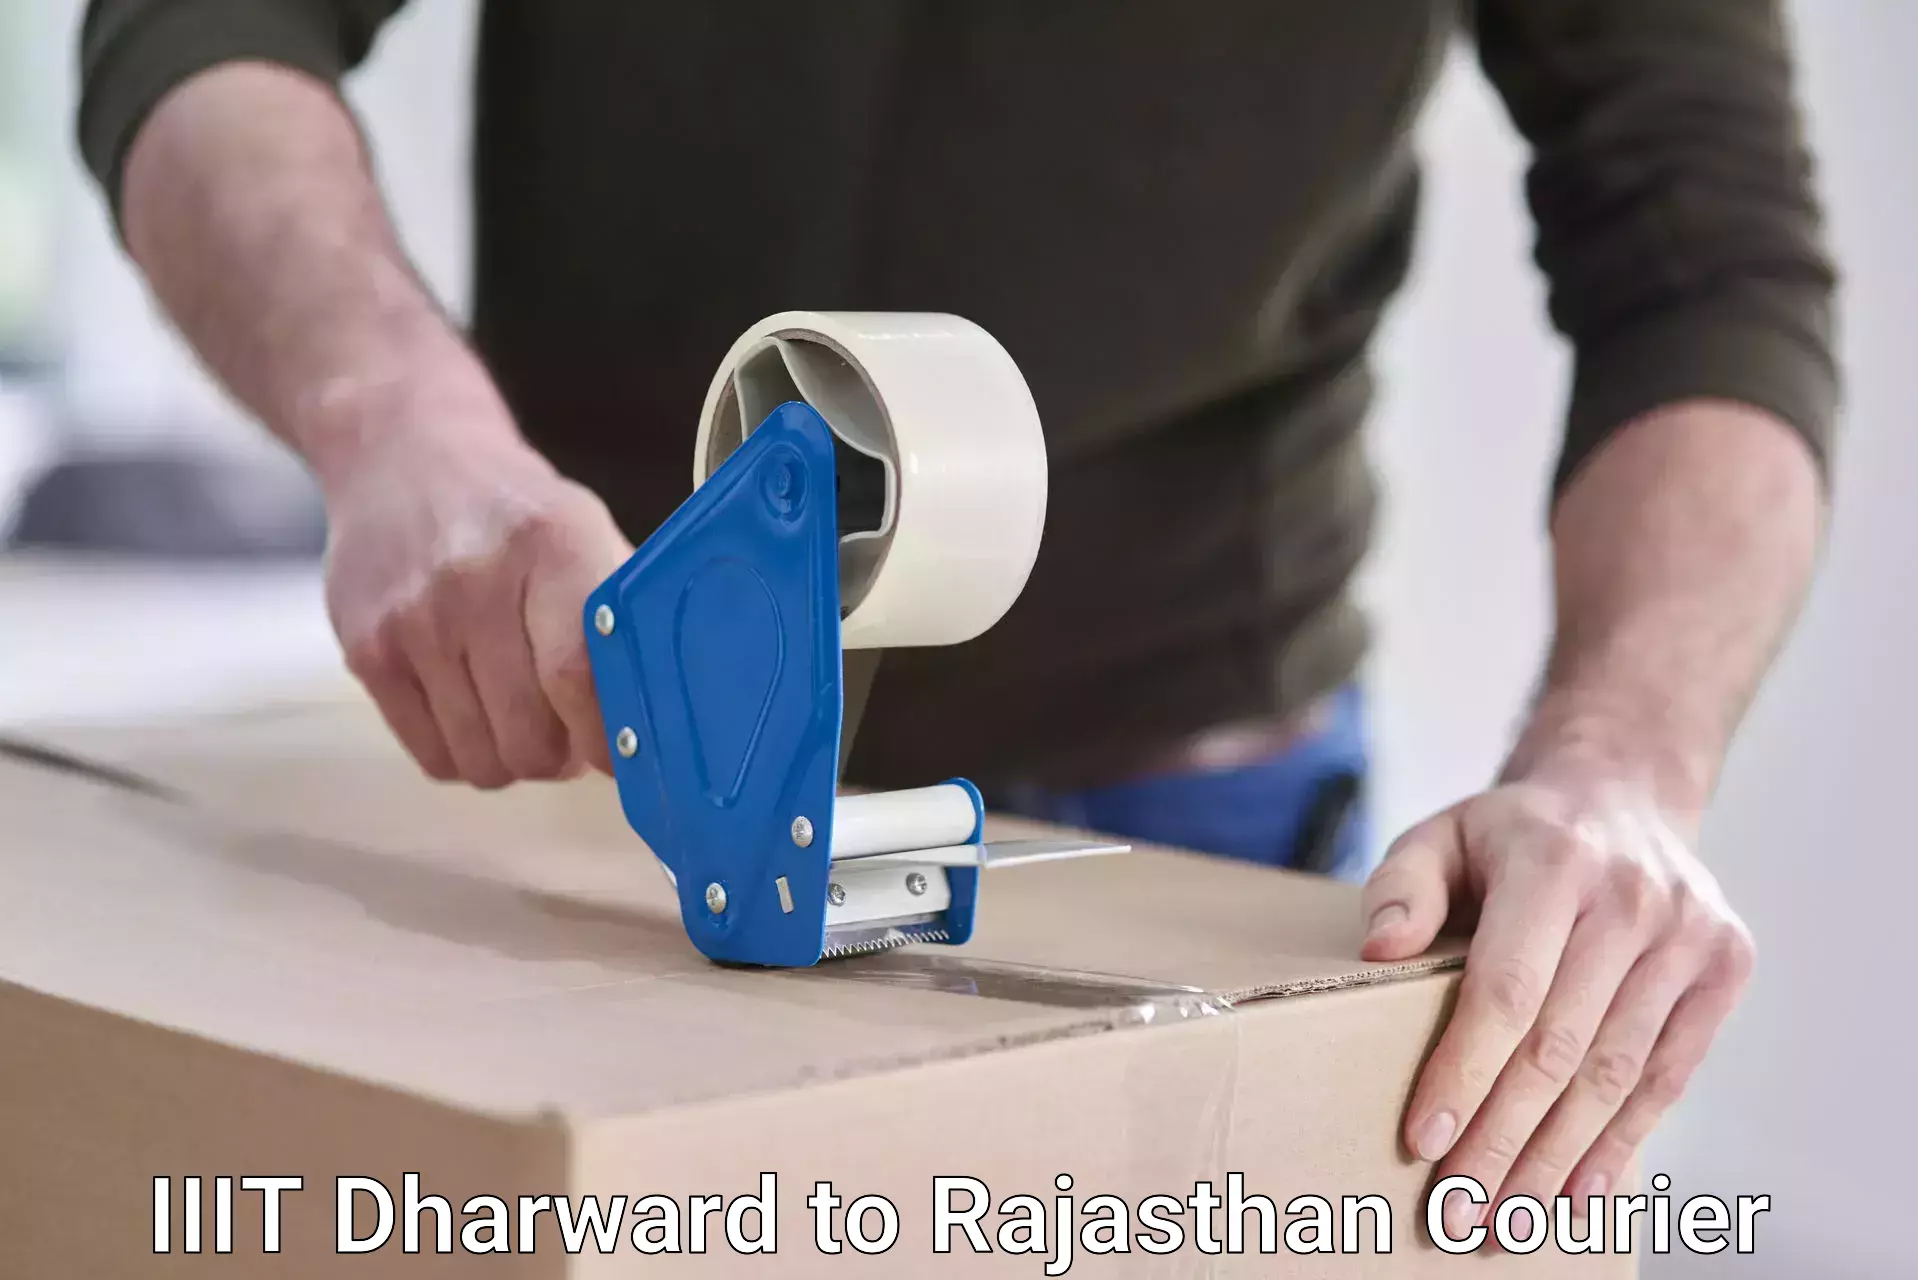 Easy return solutions IIIT Dharward to Rajasthan